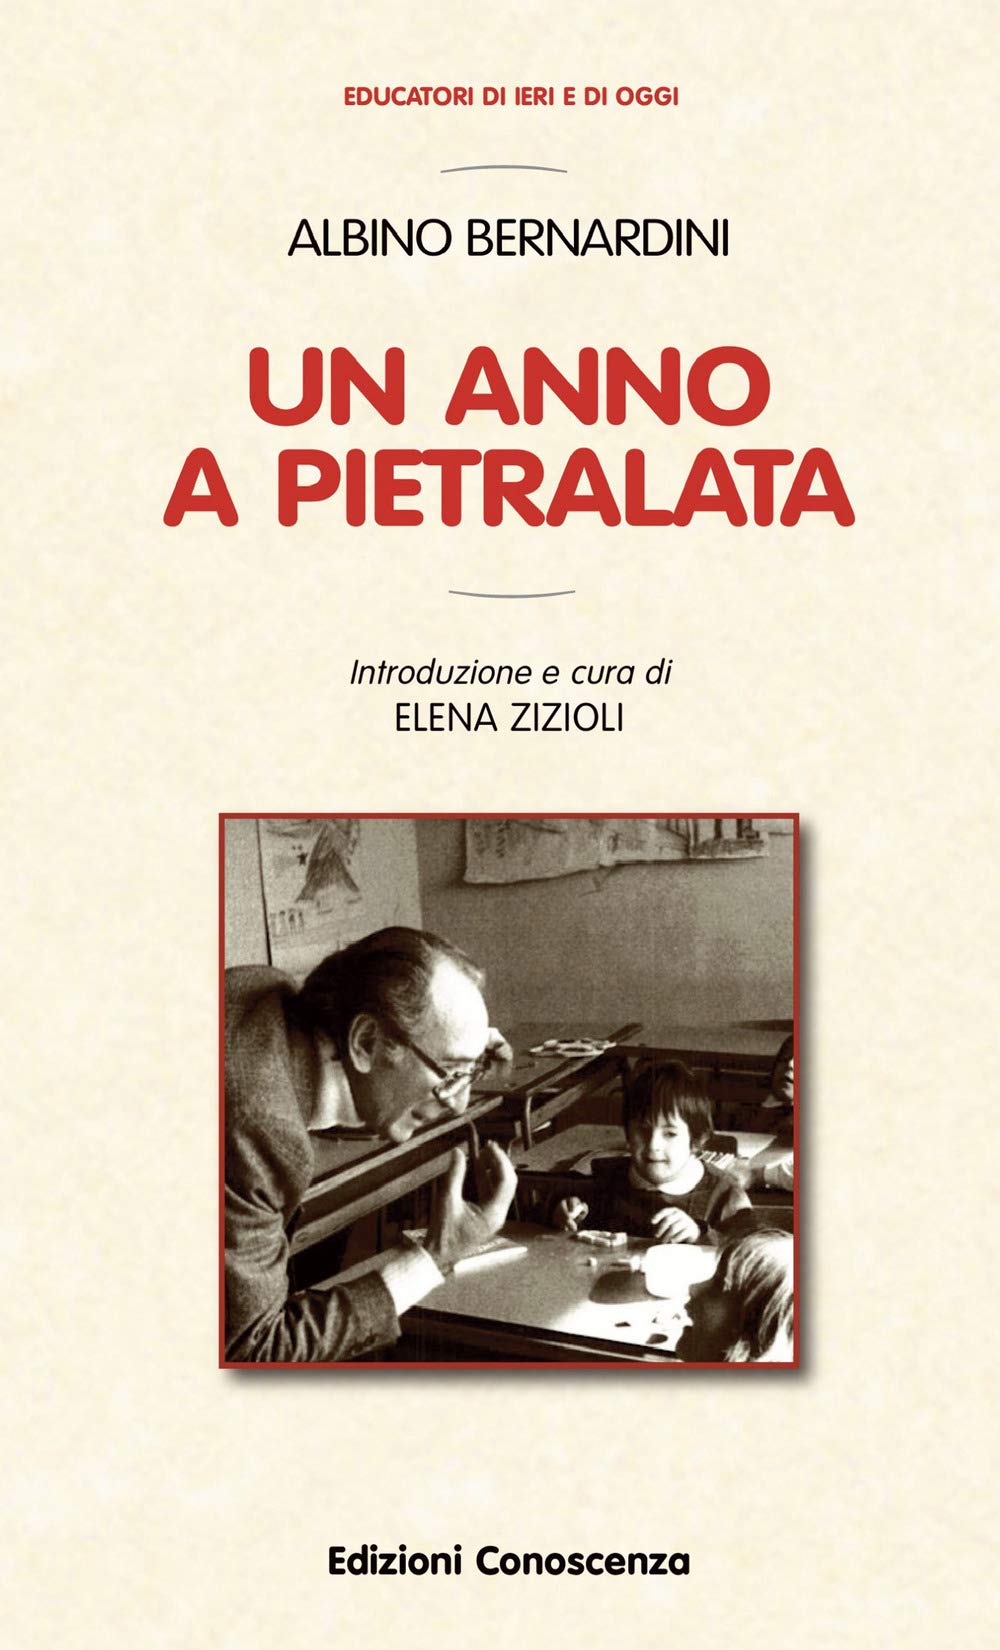 Un anno a Pietralata, Albino Bernardini